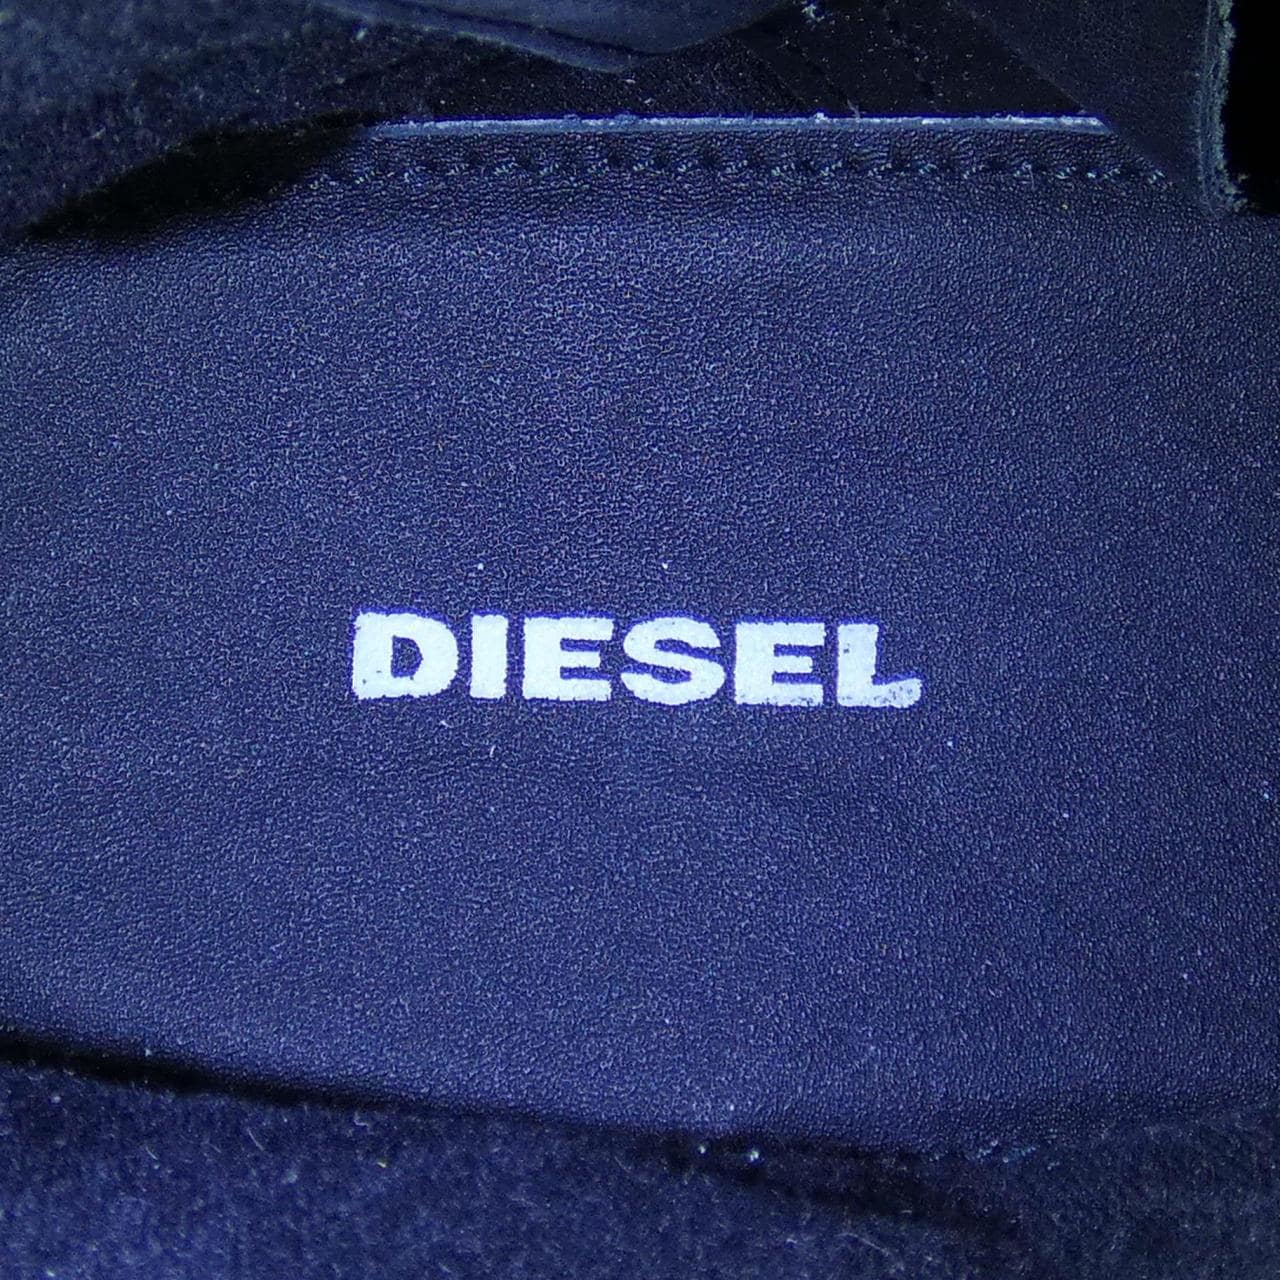 DIESEL boots